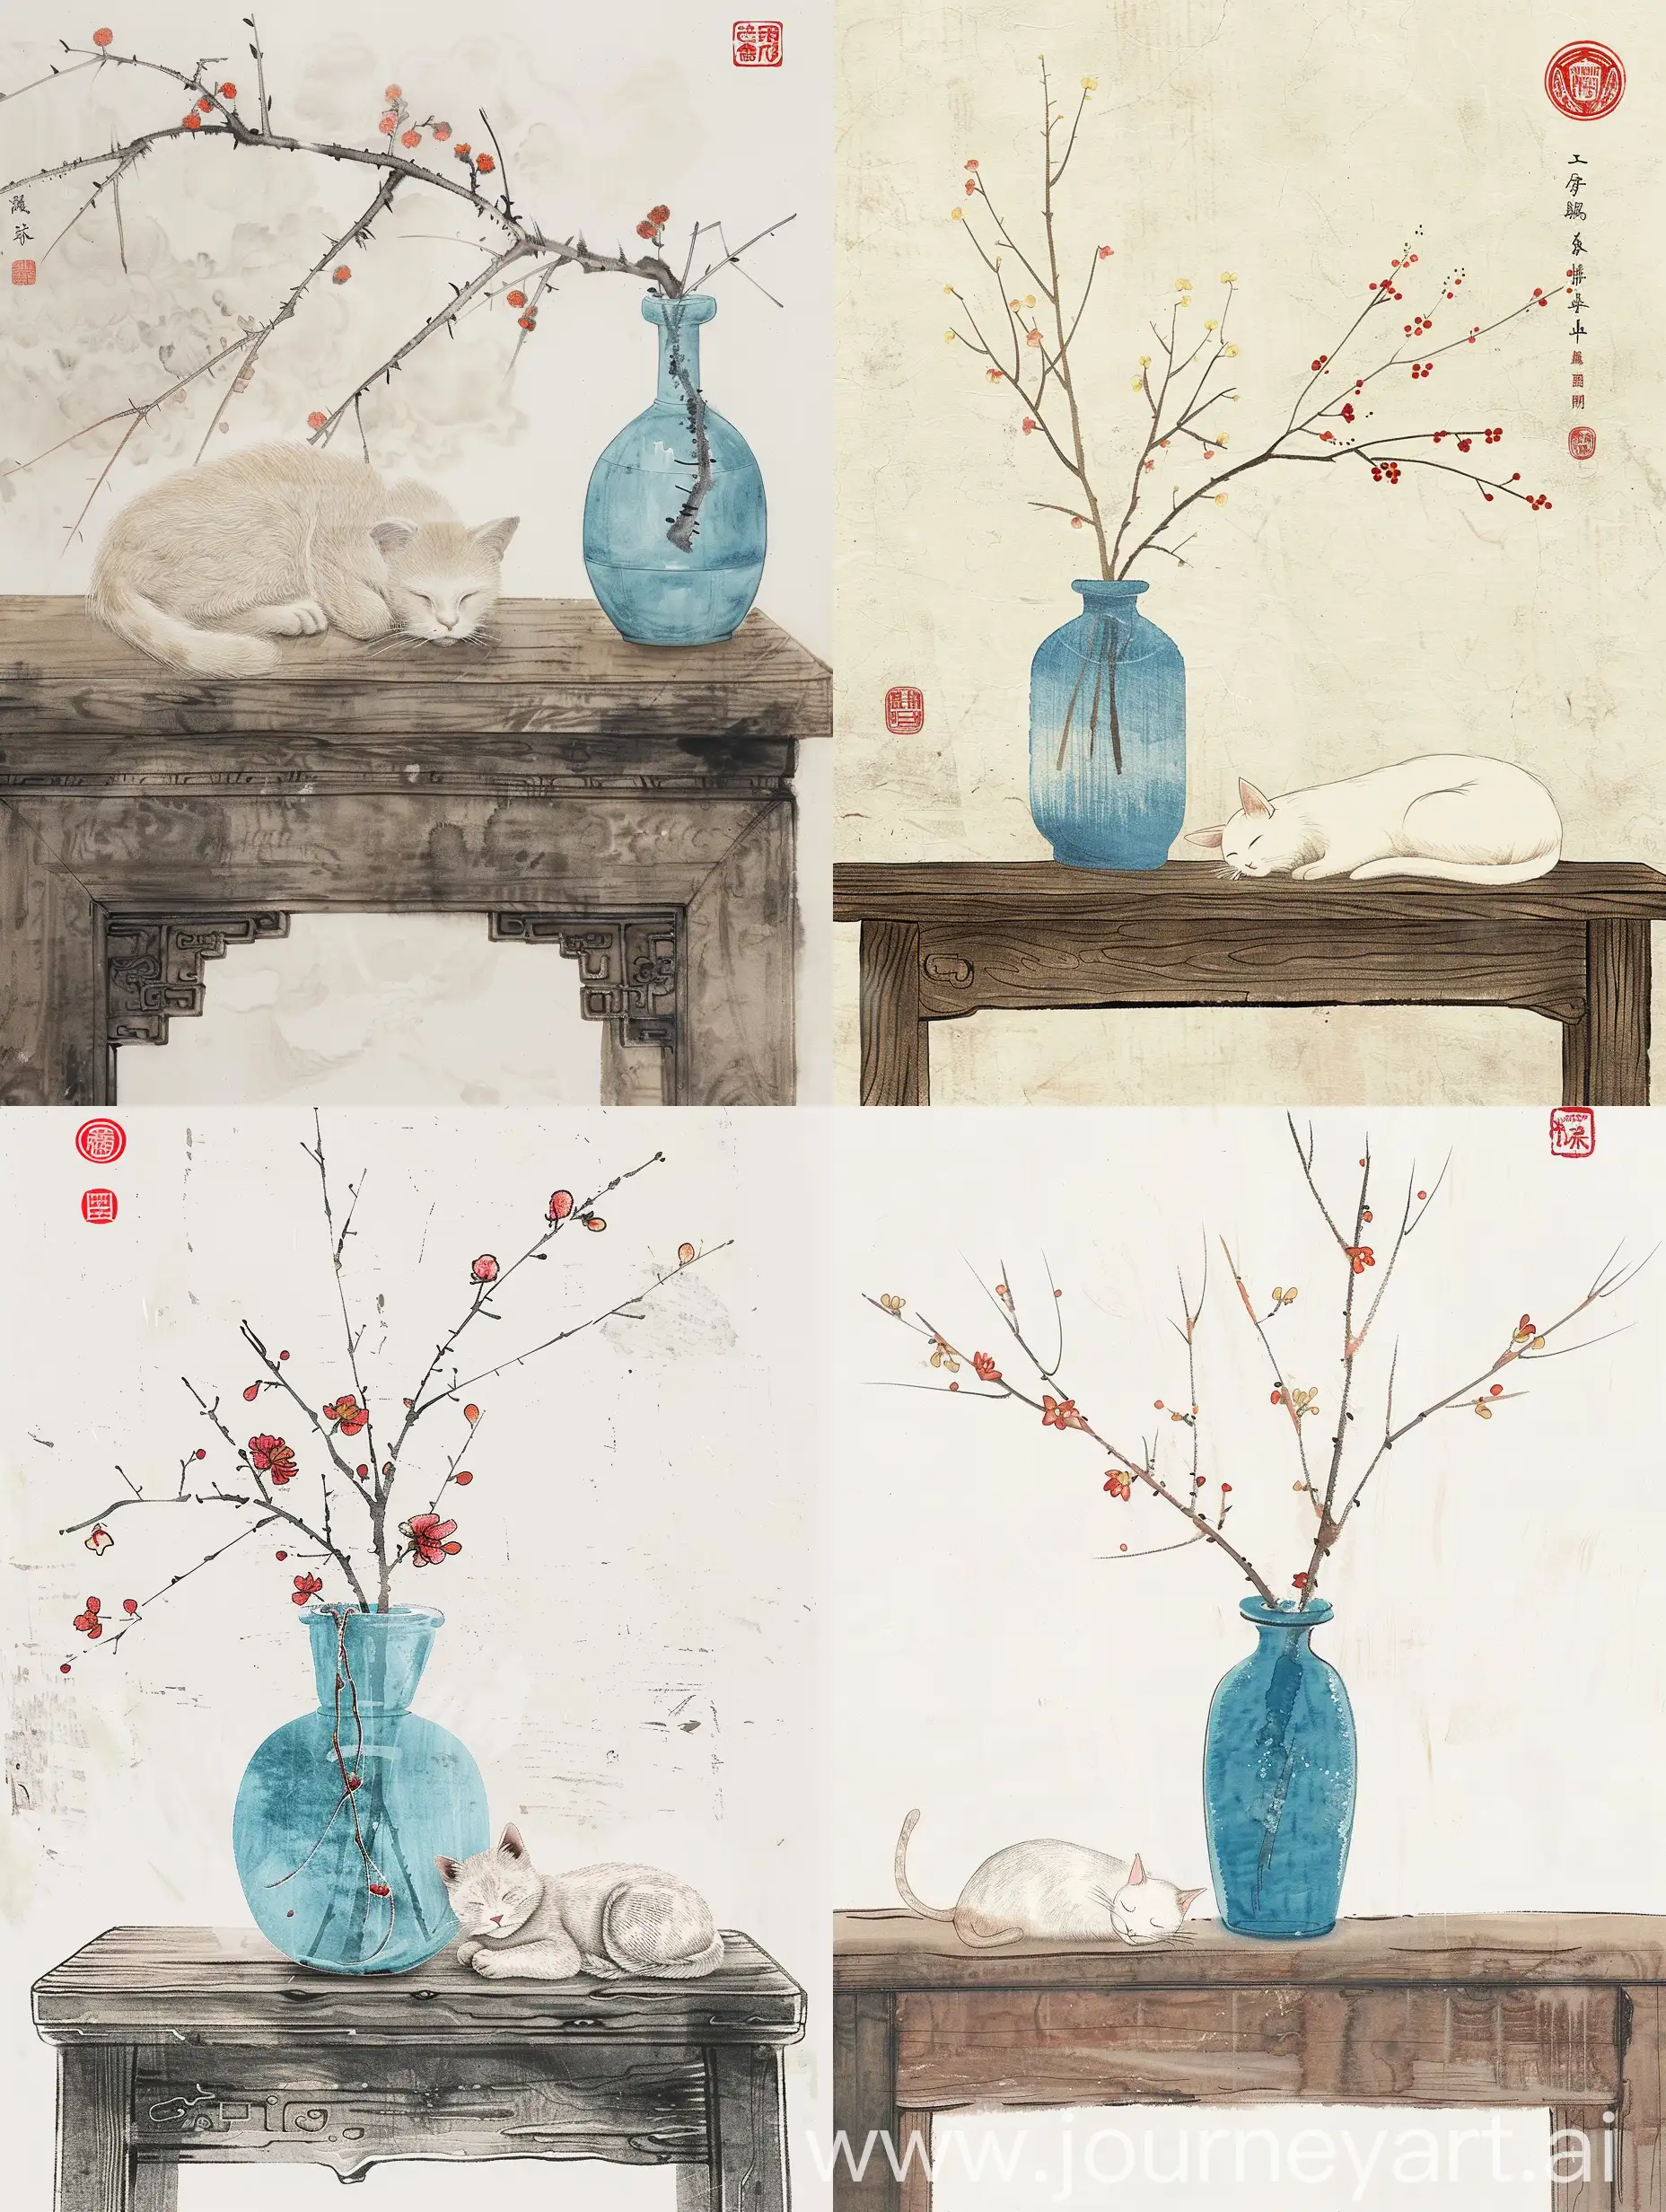 生成一幅中国风格的水墨画。画面中有一个蓝色的瓶子摆放在一张看起来有些陈旧的木桌子上，瓶子中插着几枝红花，细长的枝条和淡黄色的花朵勾勒出一种温婉的生命力。在桌子上，有一只白色的猫咪正蜷缩着睡觉，它的轮廓和面部特征用简洁的线条勾画而成，给人一种宁静而放松的感觉。画面的颜色较为柔和，使用了较为简约的色彩和线条来表达，整体上呈现出东方艺术的简洁和意境。在画面的上方和下方可以看到两个红色的印章，这在传统的中国绘画中通常代表了作者的签名或是用来增添画面的装饰效果。整体上，这幅画传达了一种静谧和诗意的氛围